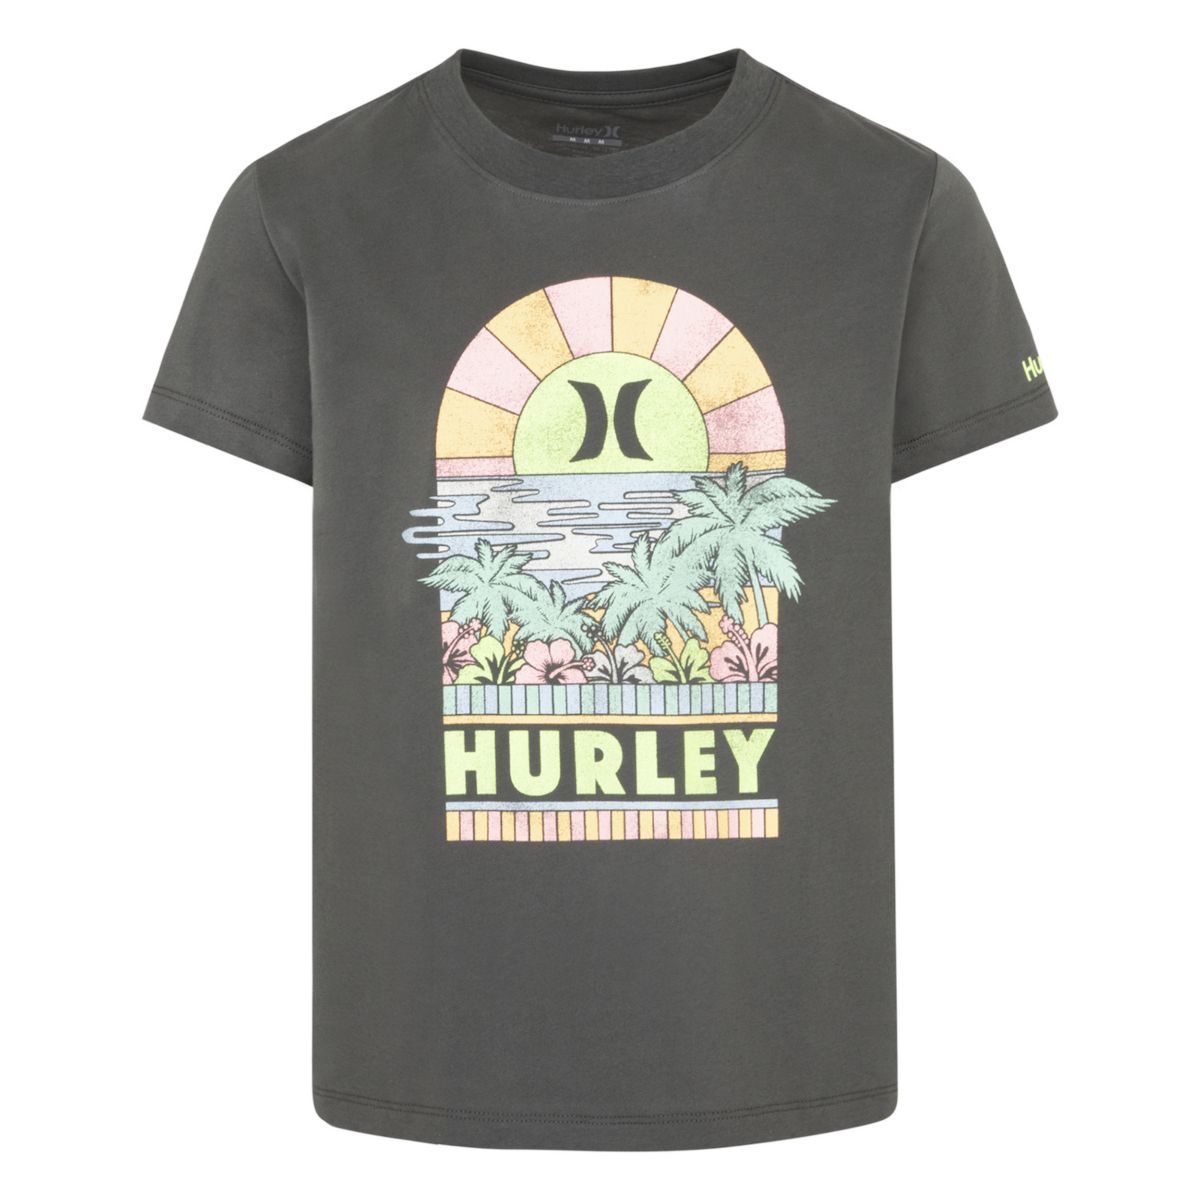 Футболка с рисунком Hurley Sunset для девочек 7–16 лет Hurley